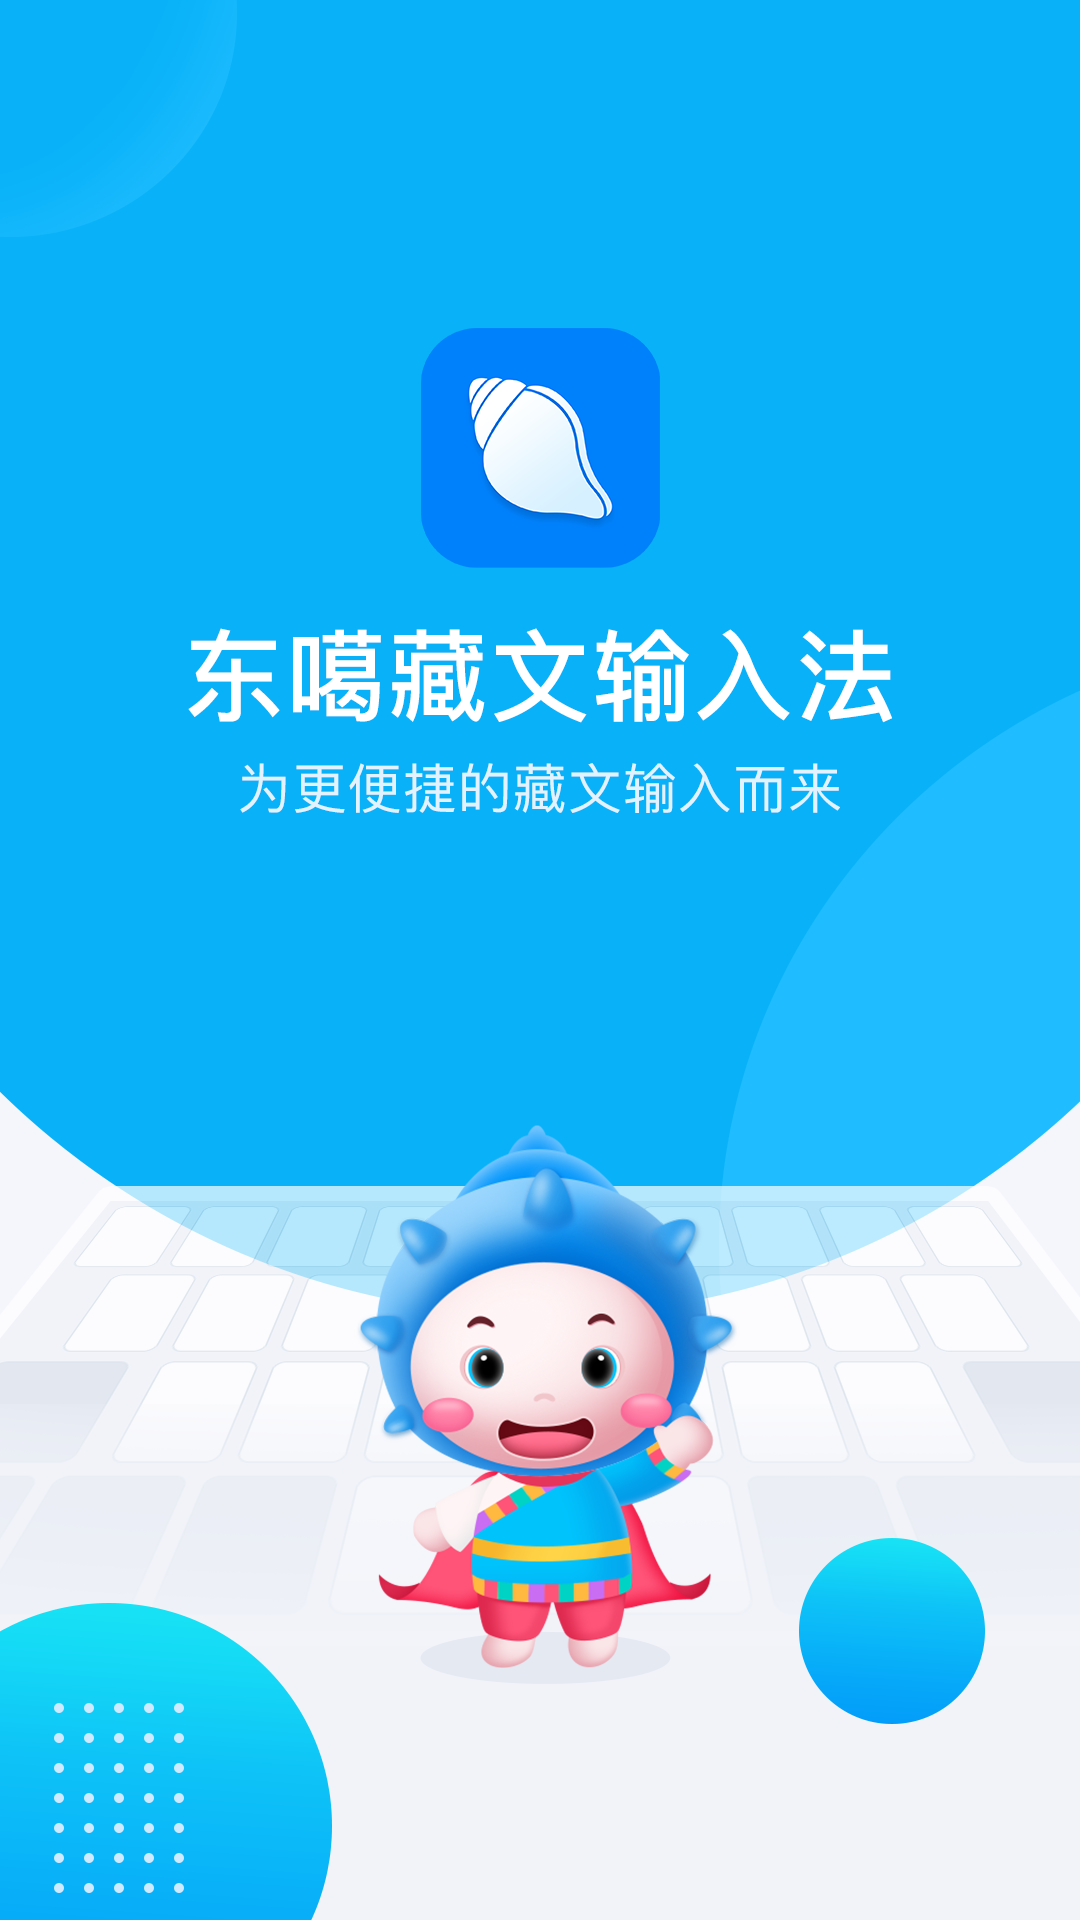 东噶藏文输入法app截图(1)